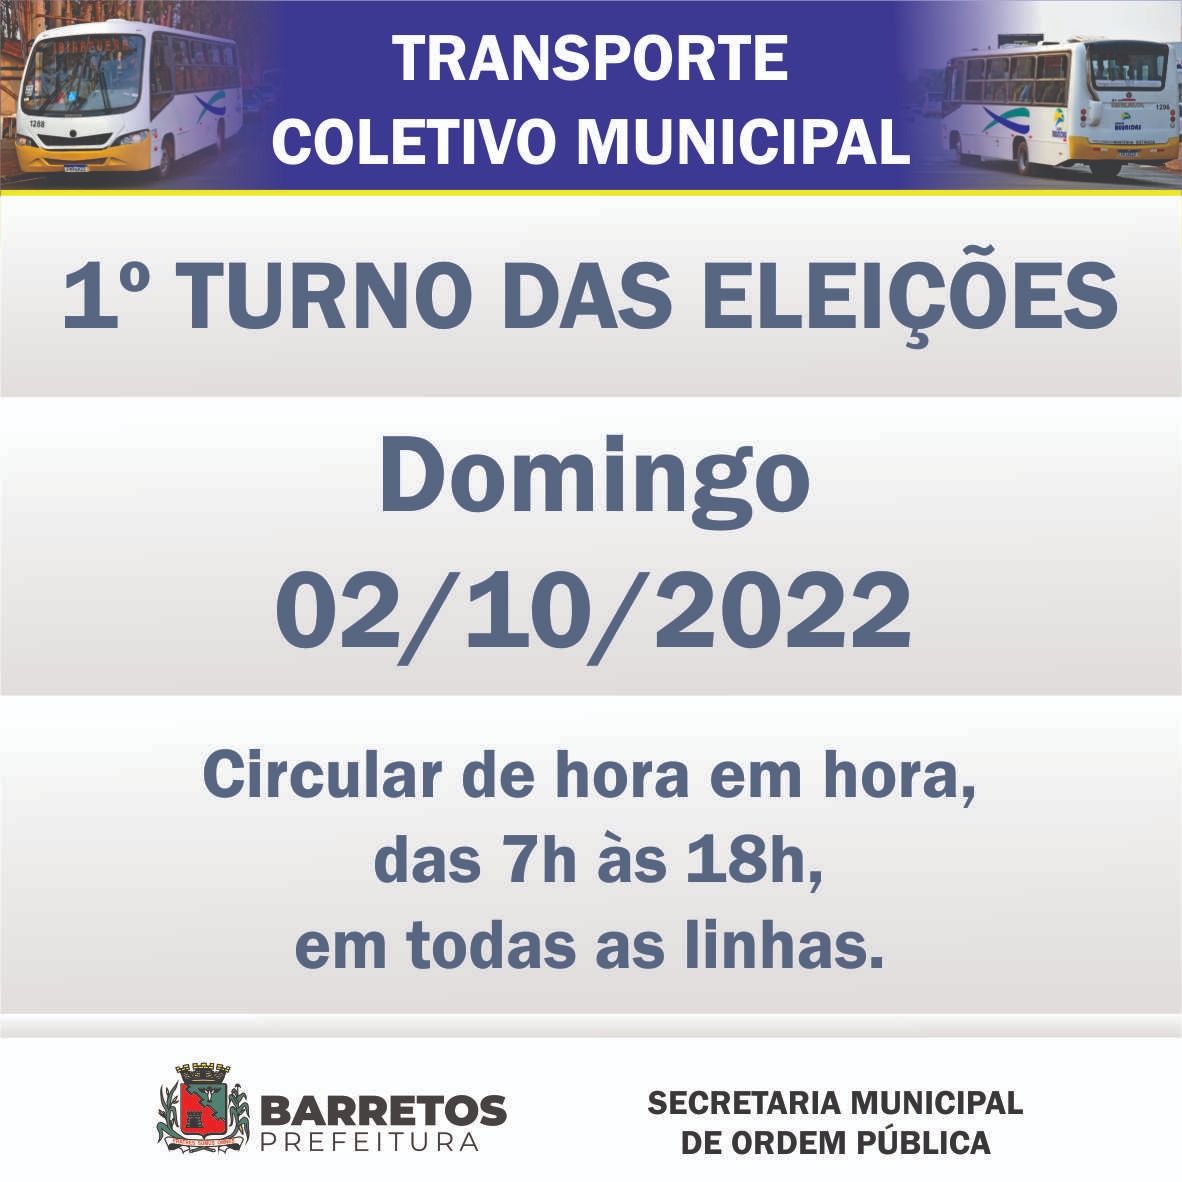 Eleições 2022: Transporte Coletivo Municipal funciona até 18h no domingo, dia 02